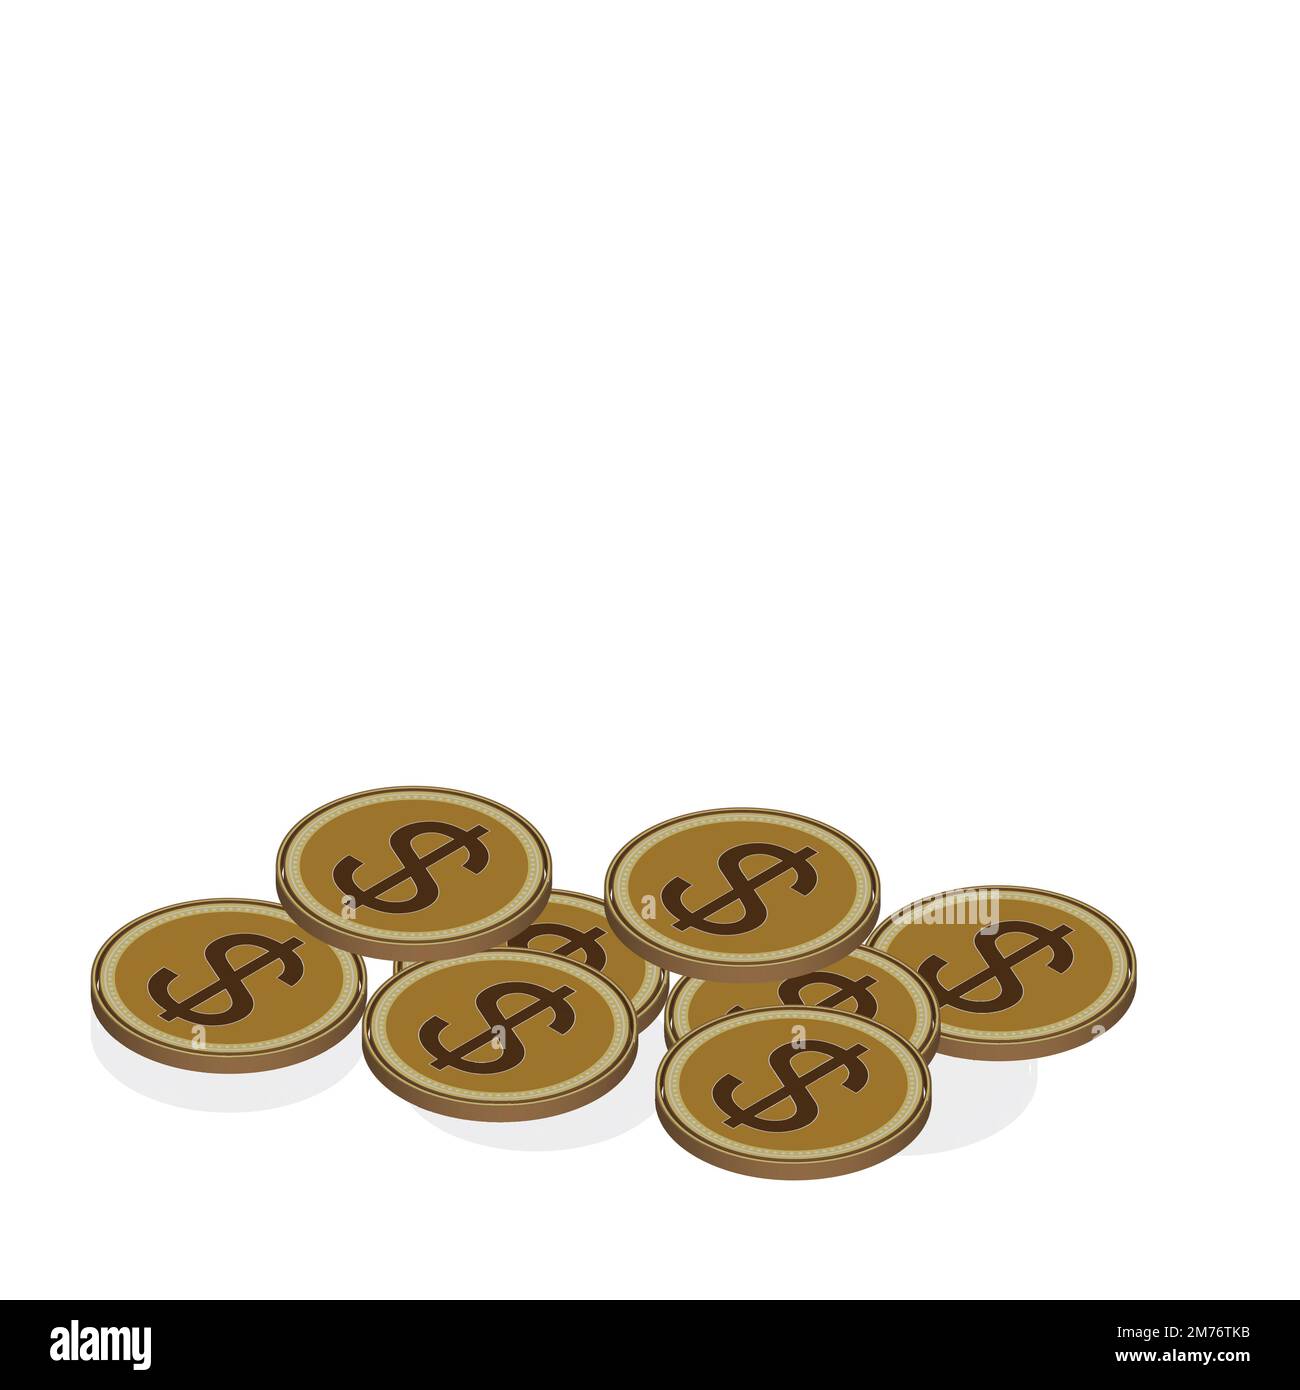 vector design of coins Stock Vector